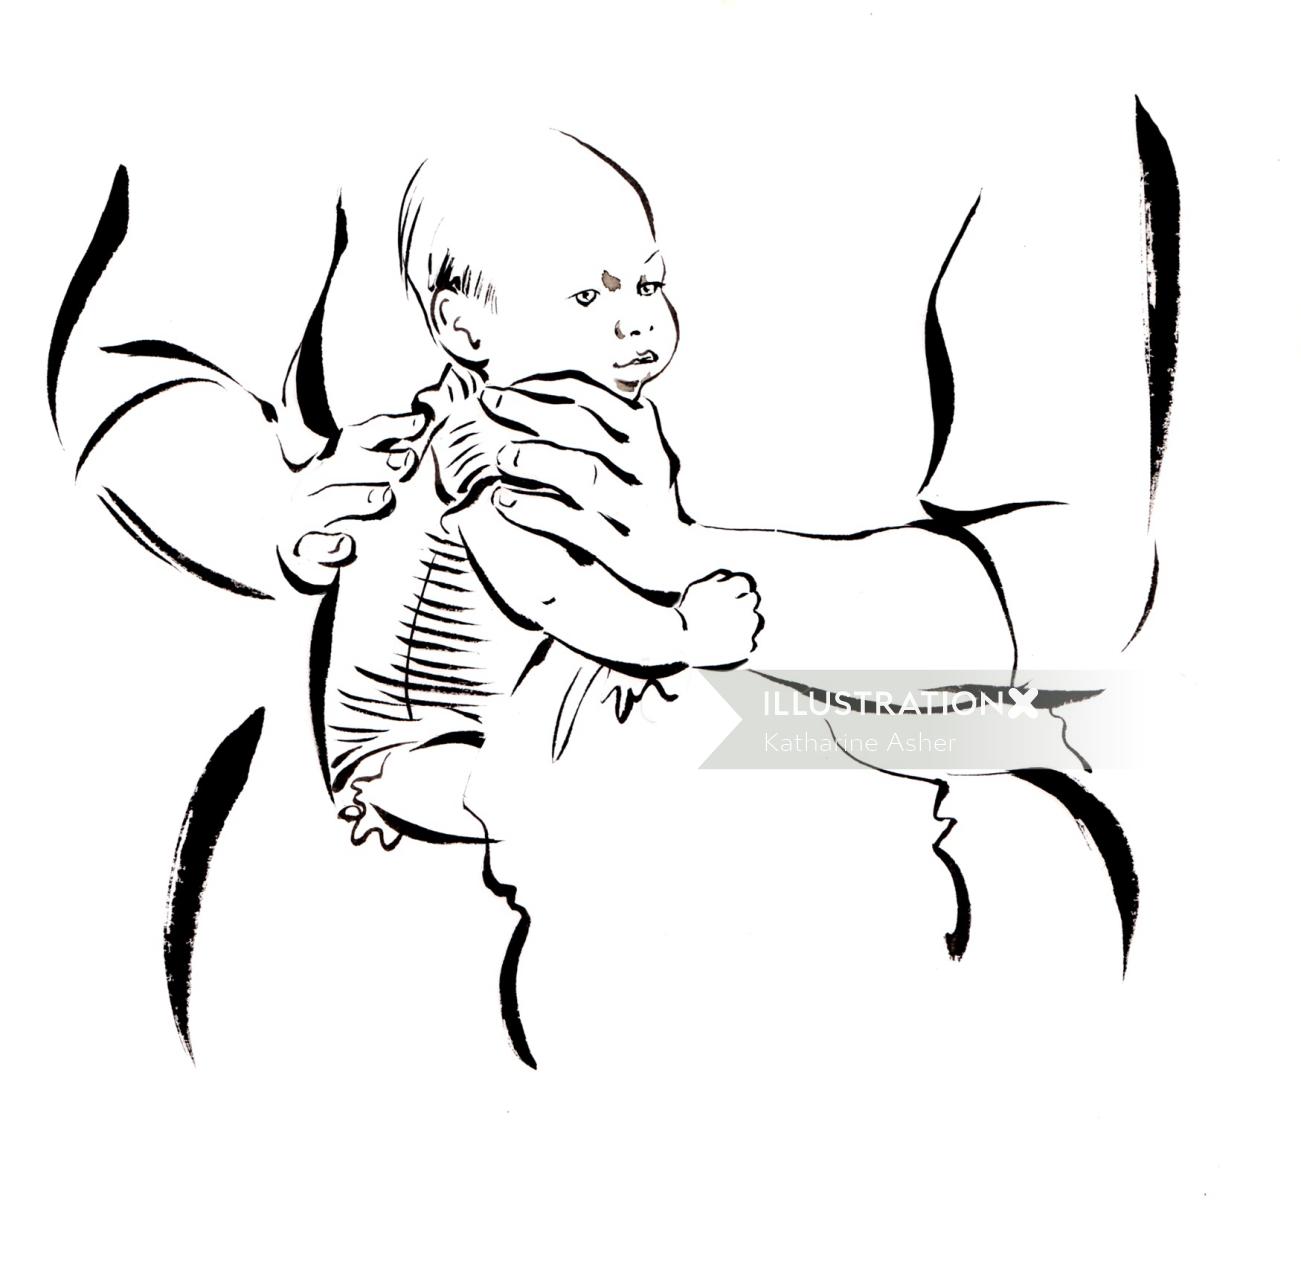 Madre con ilustración de bebé de Katharine Asher